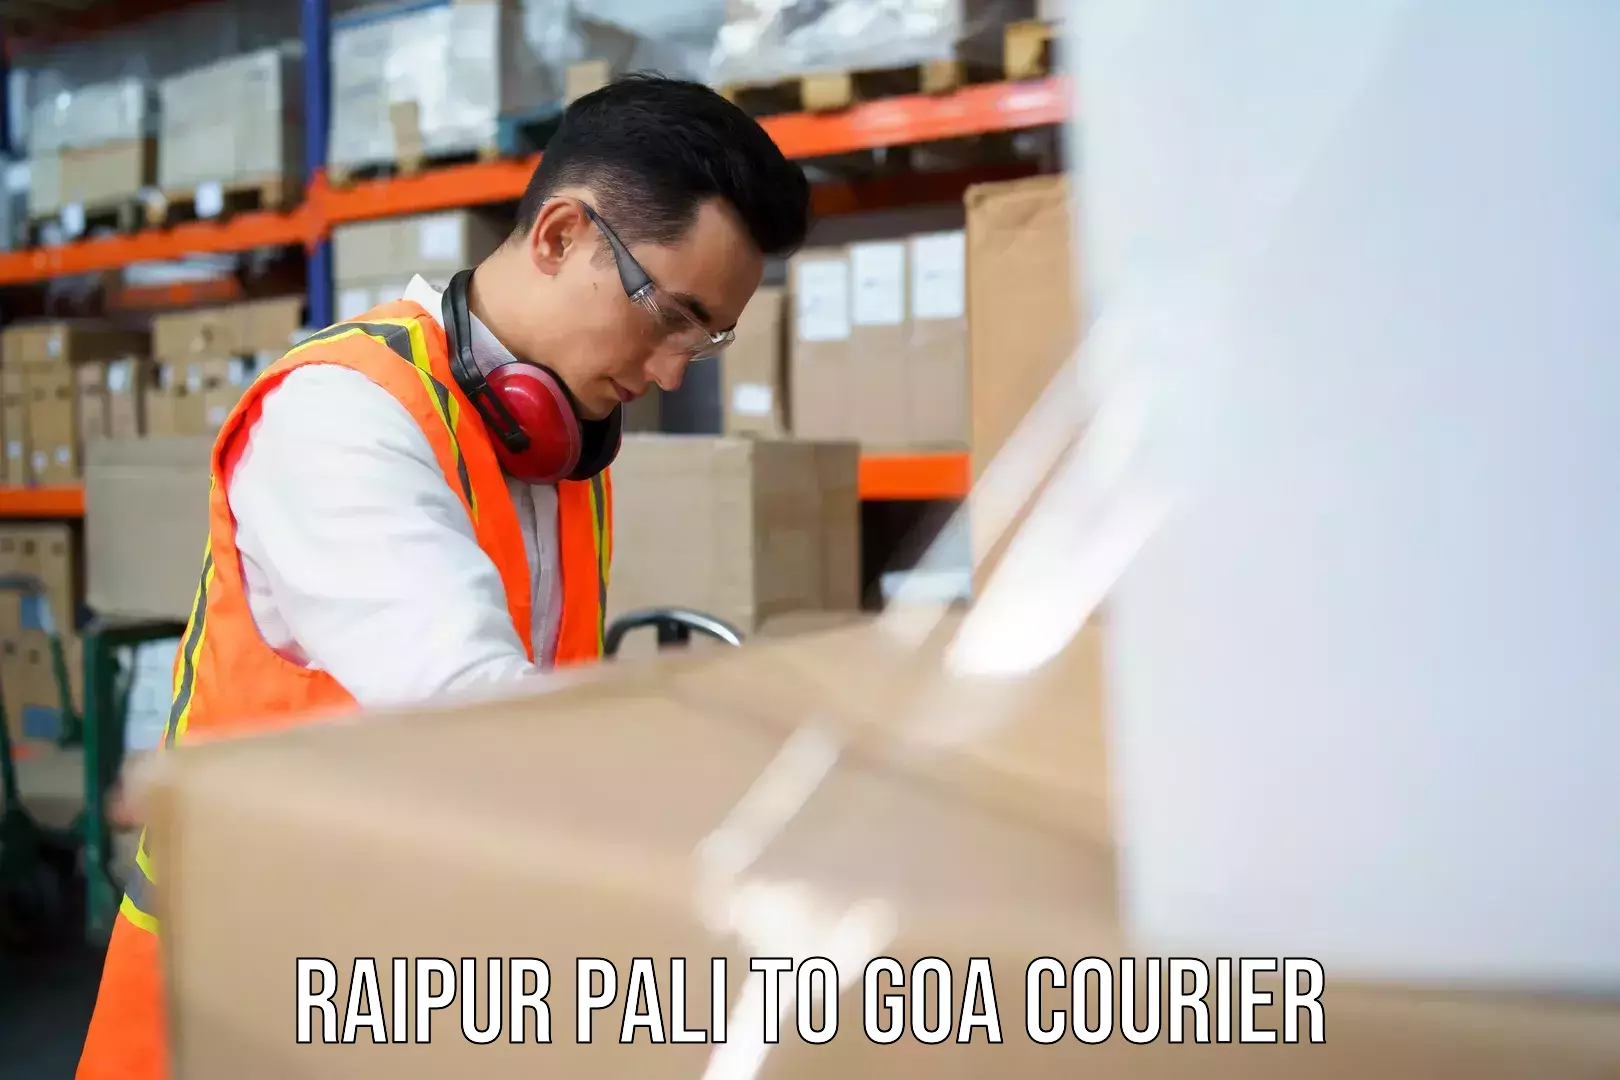 Efficient parcel delivery Raipur Pali to Bicholim